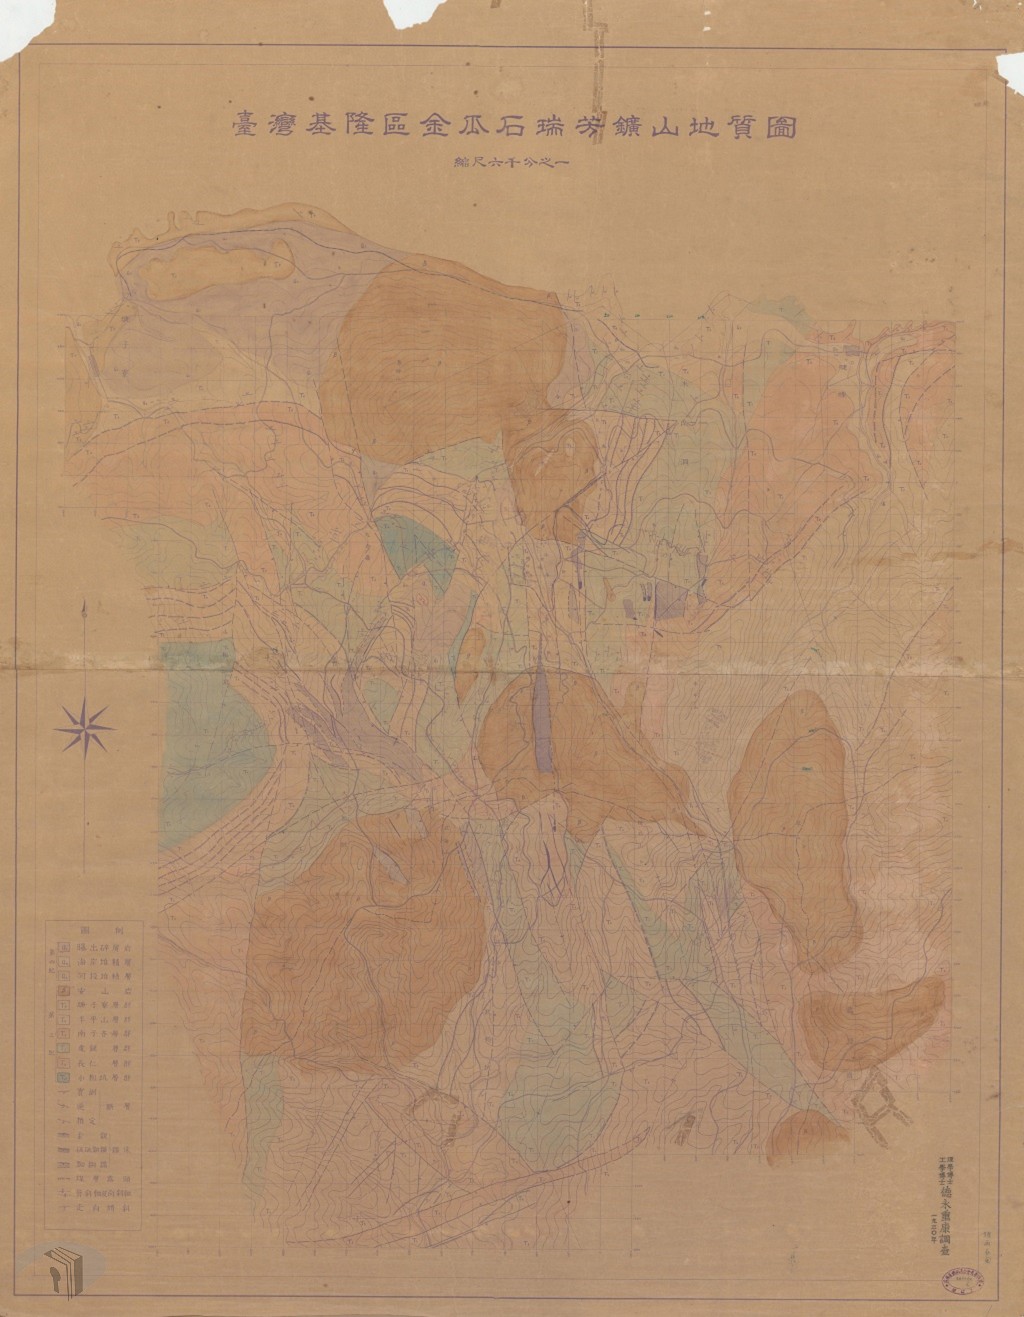 圖2 1930年臺灣基隆區金瓜石瑞芳礦山地質圖